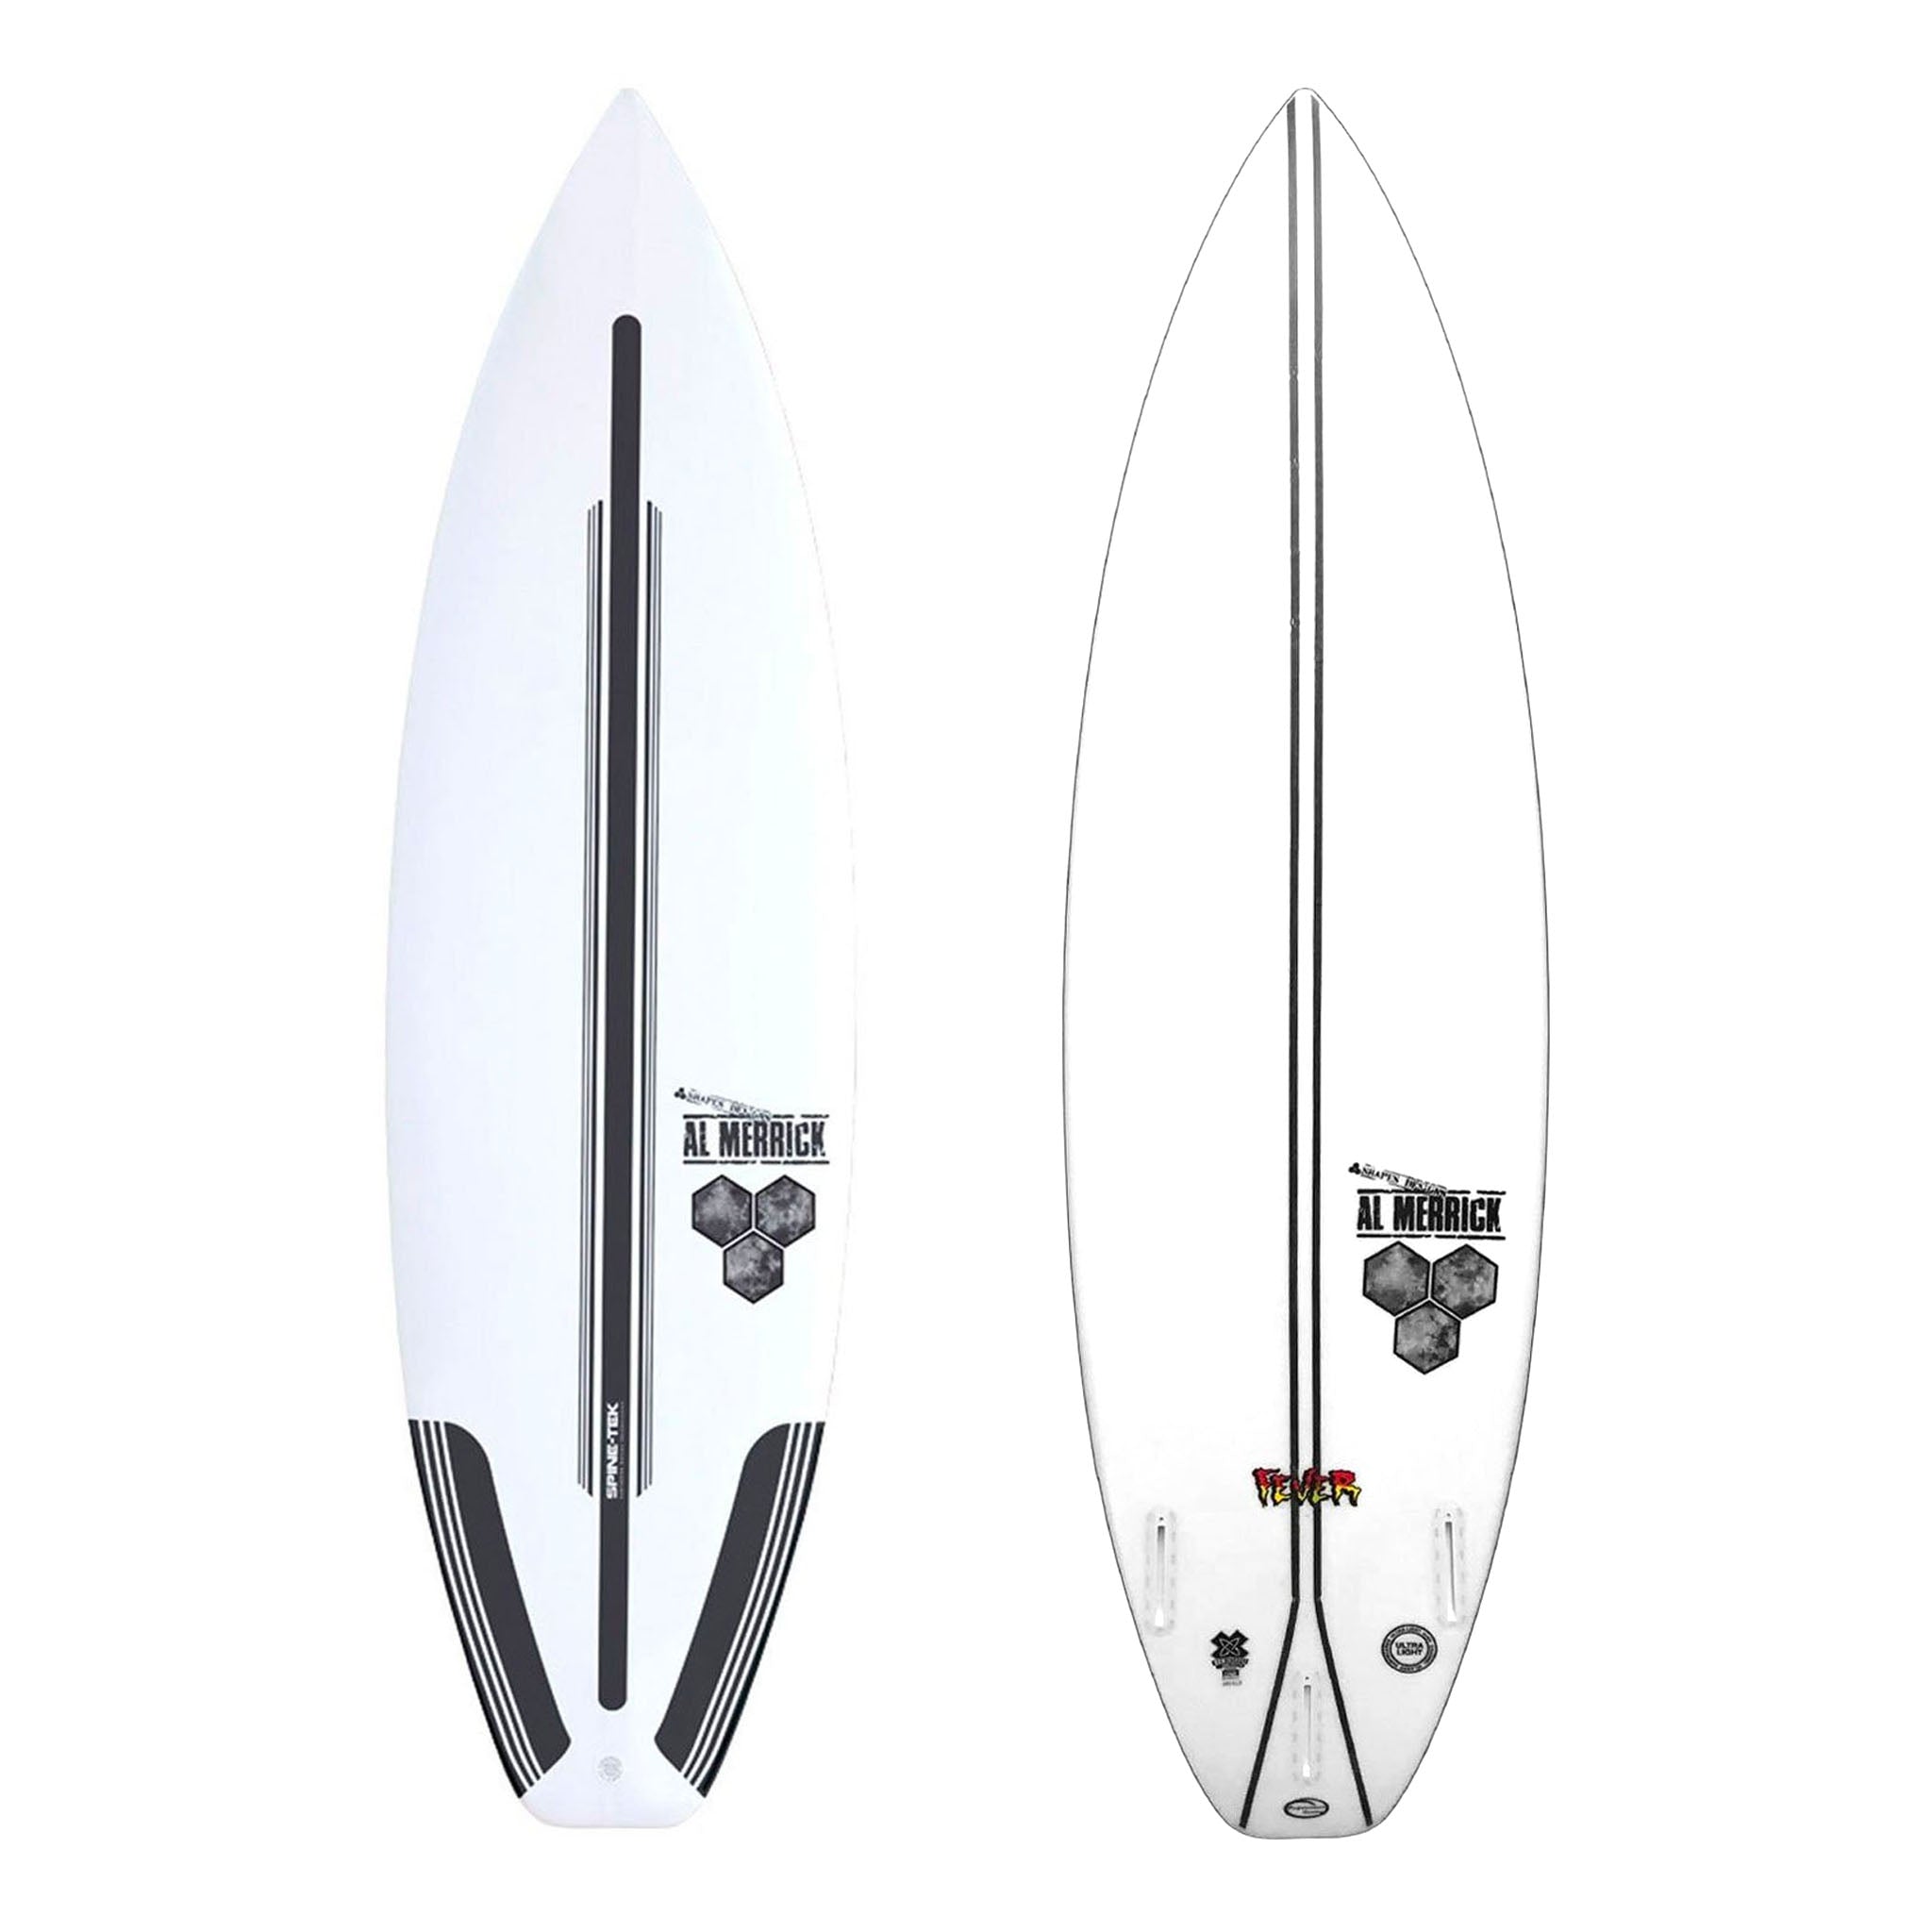 Channel Islands Fever Spine-Tek Surfboard - Futures